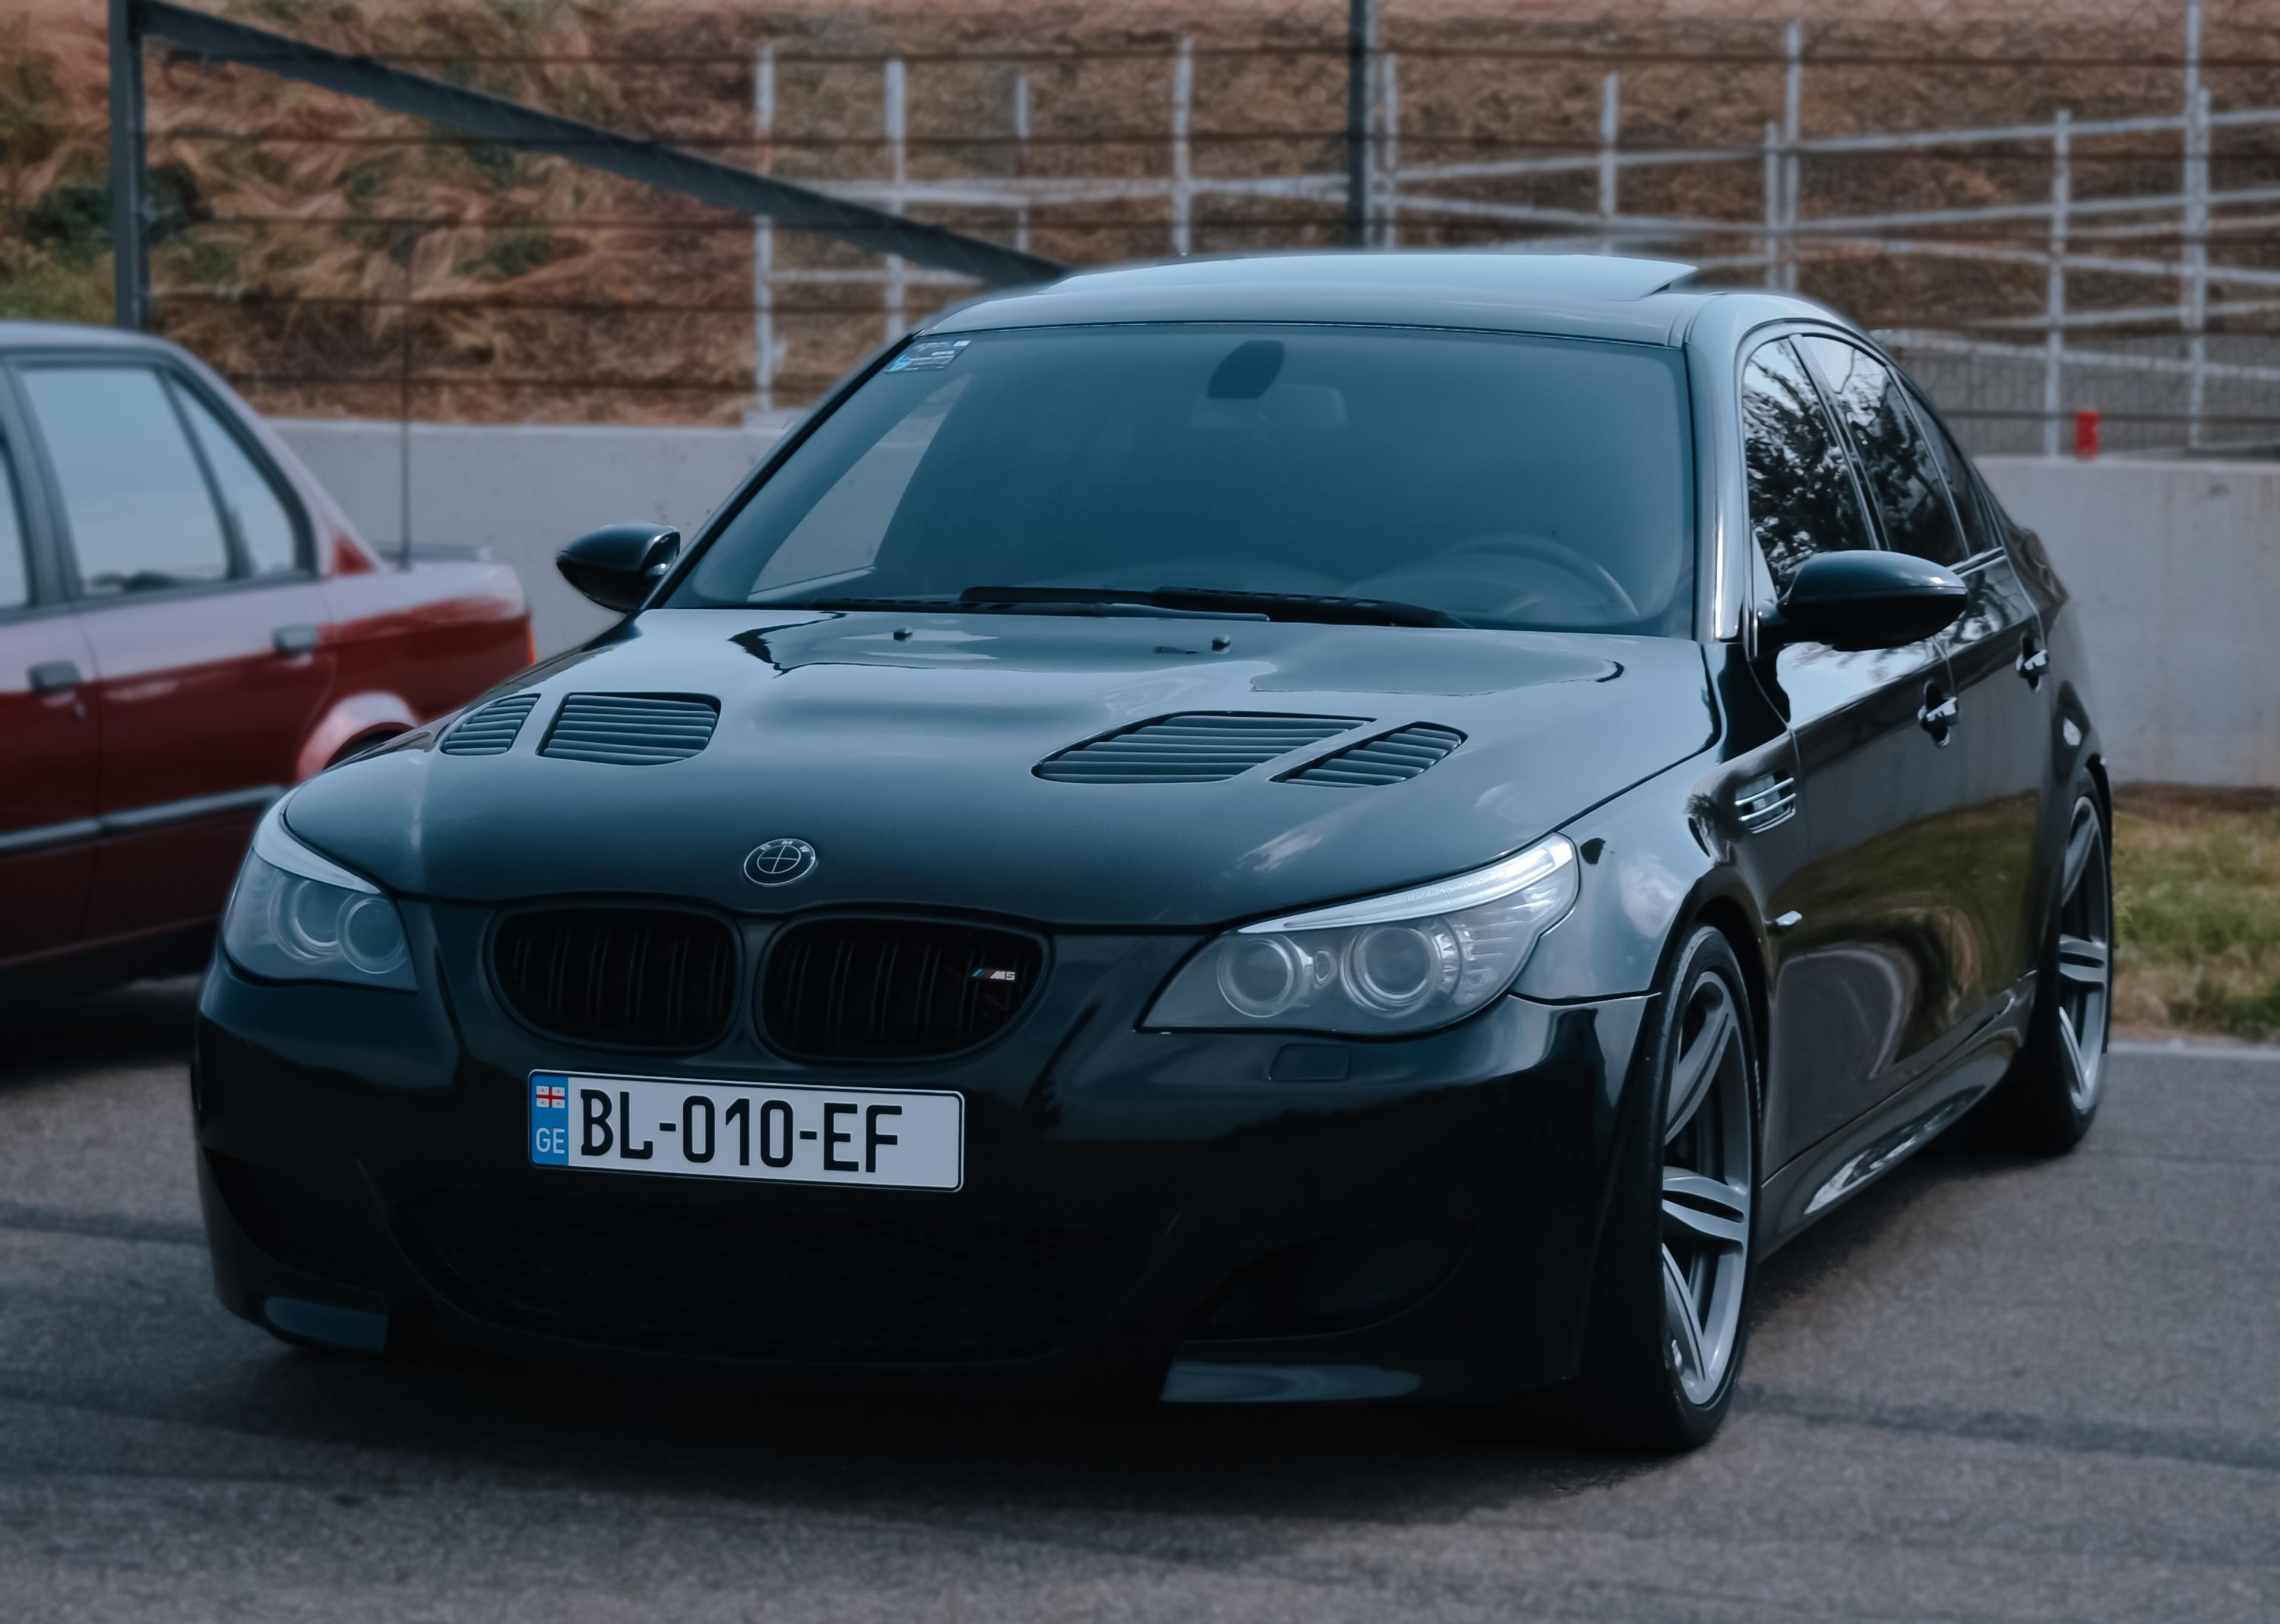 BMW M5 (E60), 9th best sounding car ever